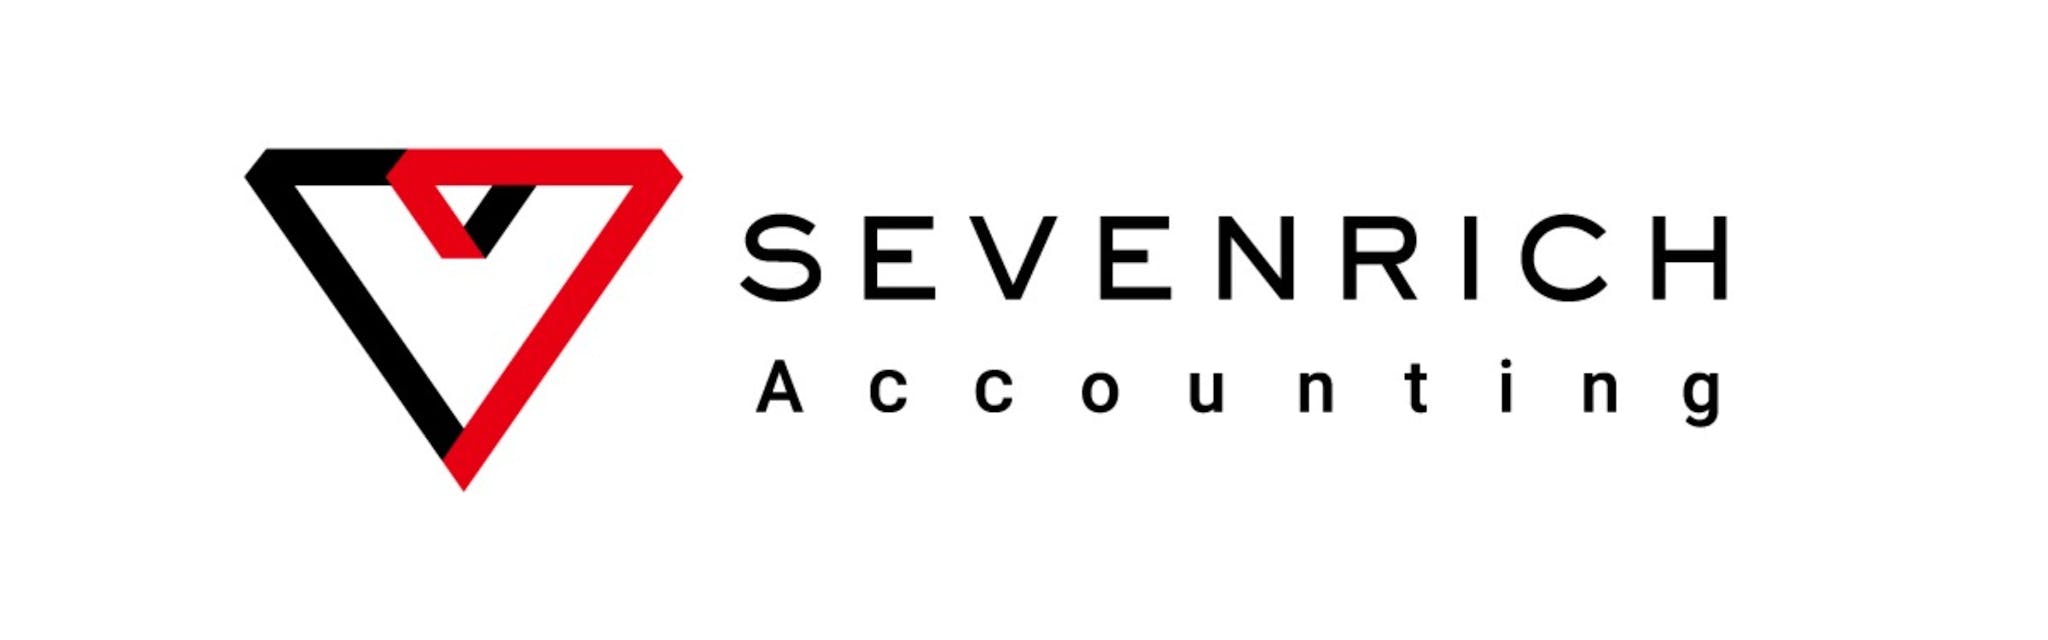 株式会社SEVENRICH Accounting - メイン画像